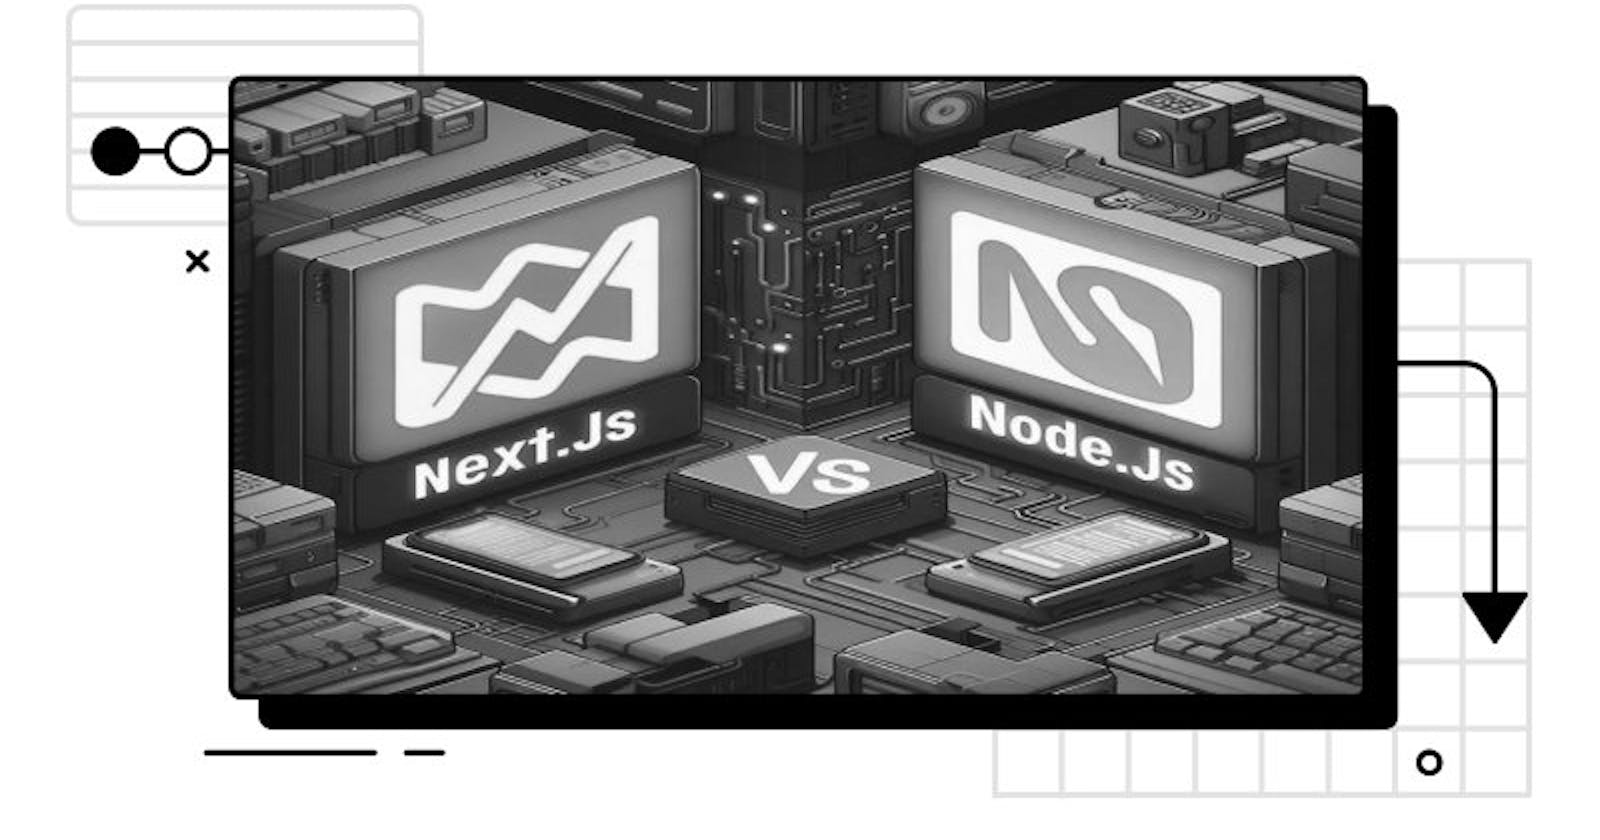 Next.js vs Node.js: A Modern Contrast